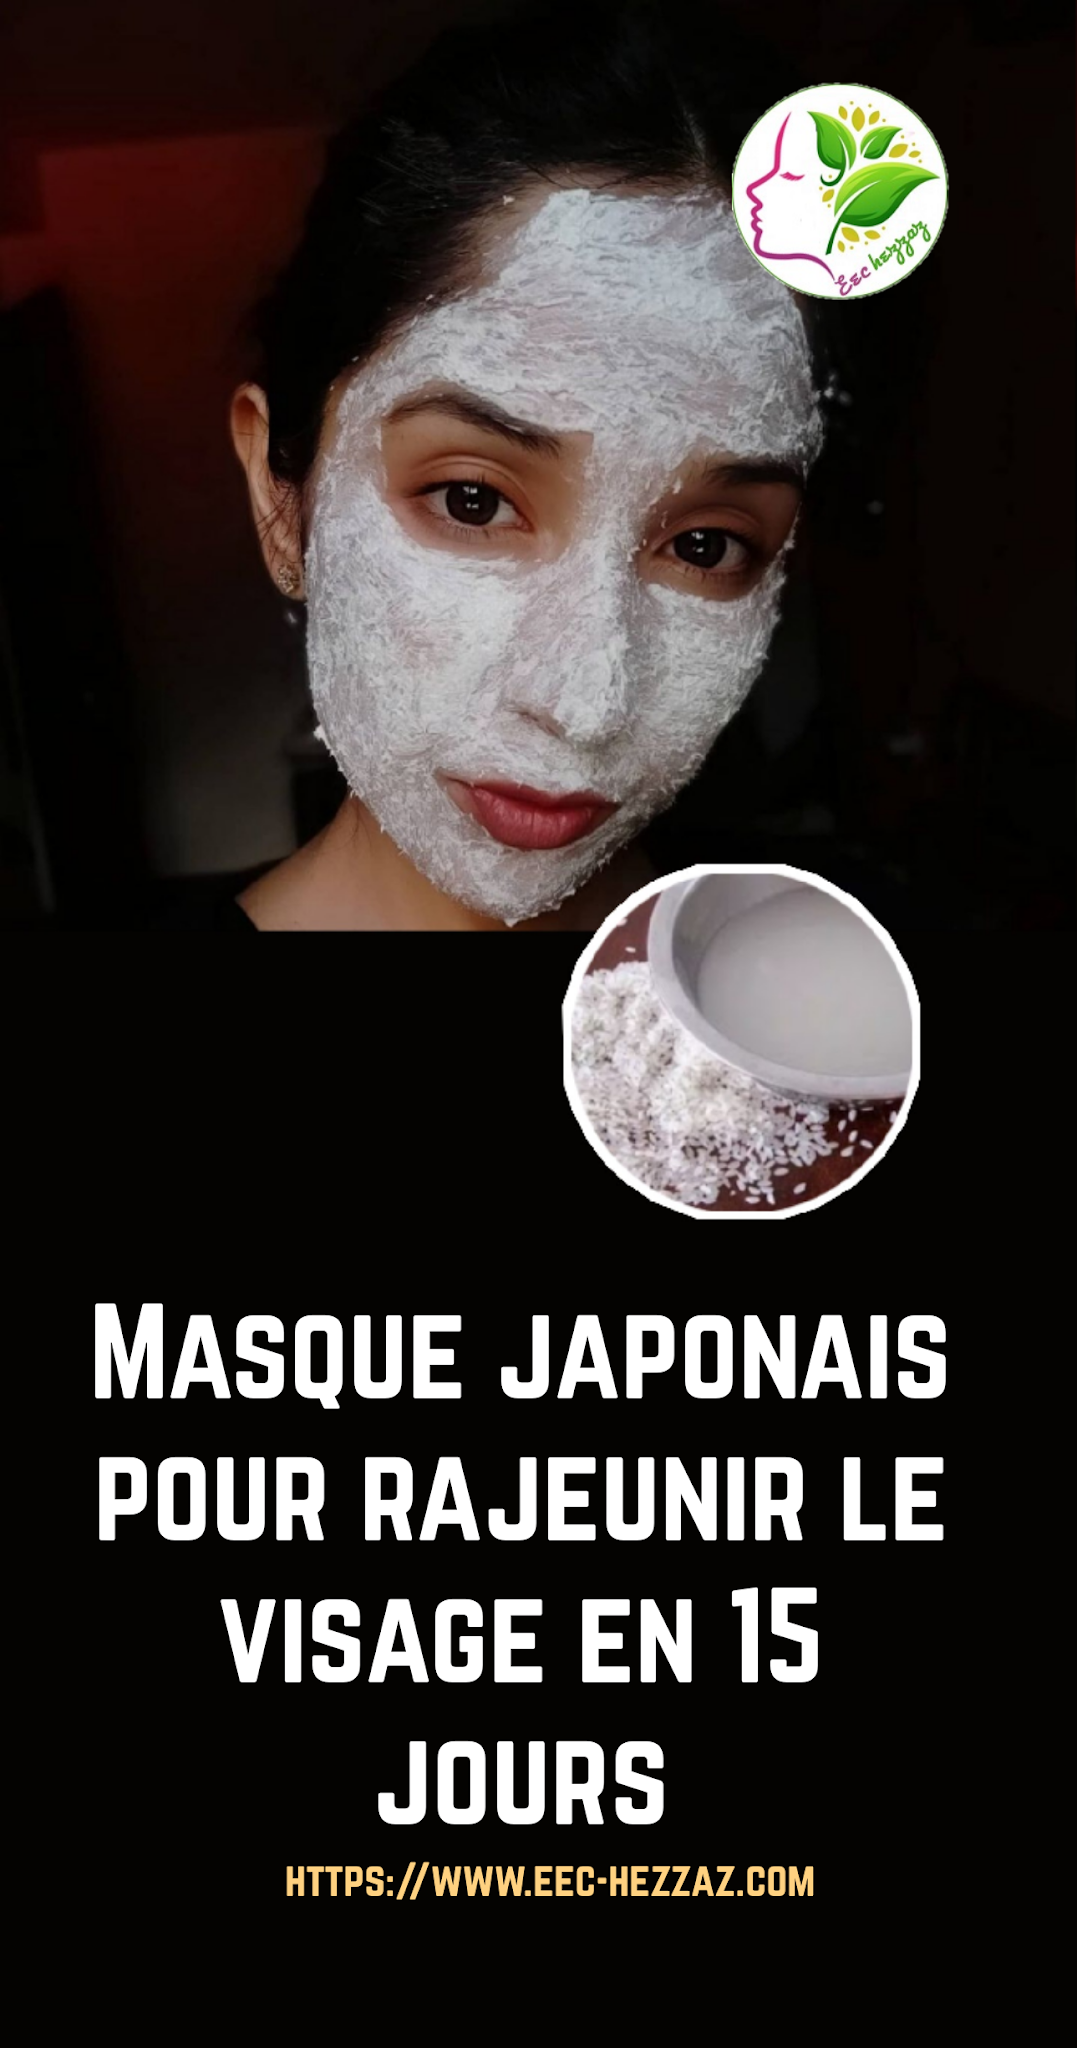 Masque japonais pour rajeunir le visage en 15 jours